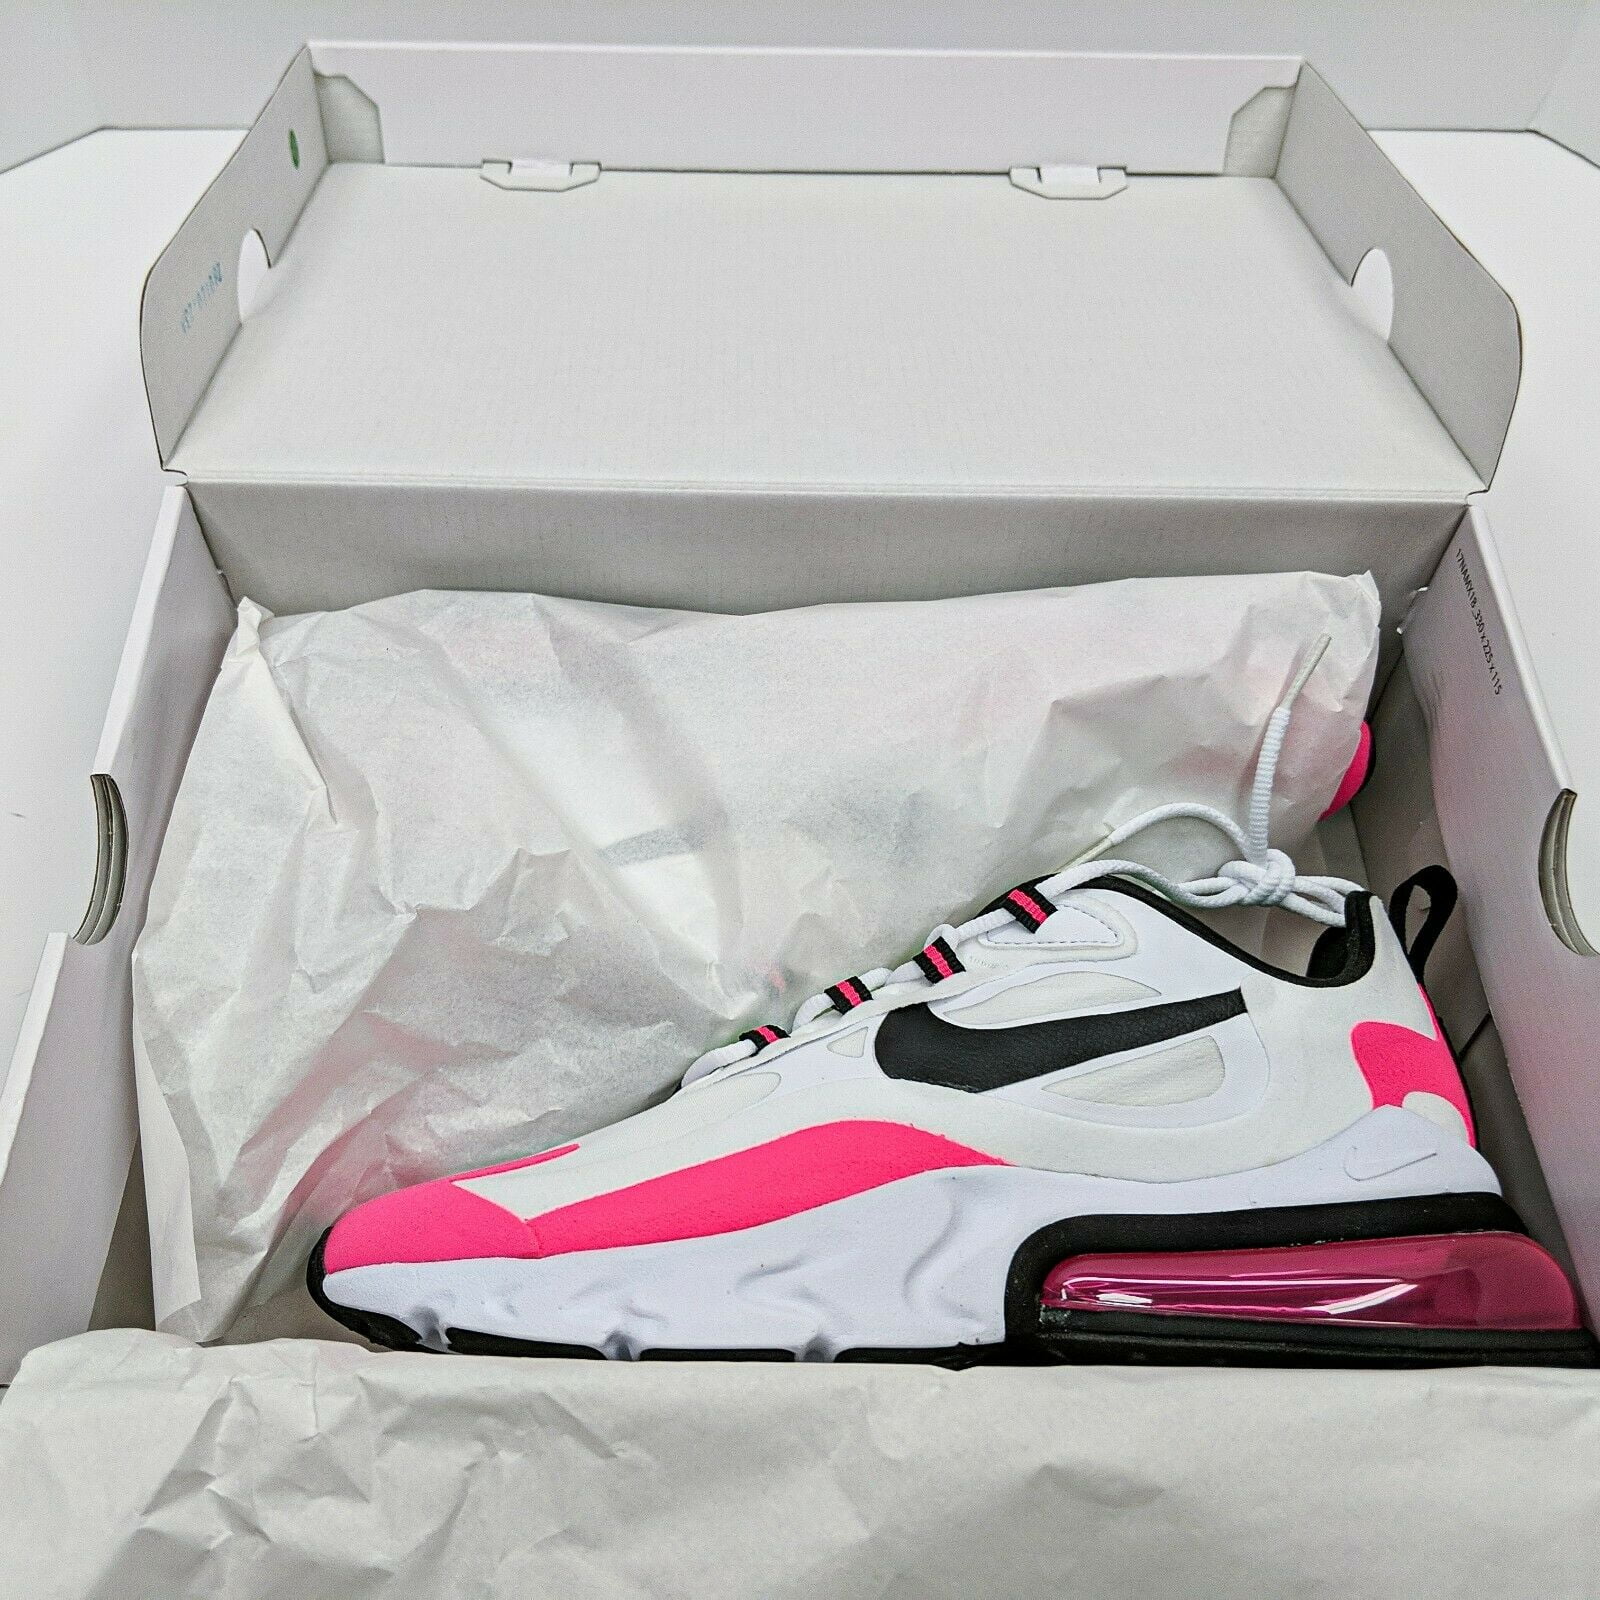 Nike Air Max 270 React Women's Shoes White/Hyper Pink/Black CJ0619-101 Size  11